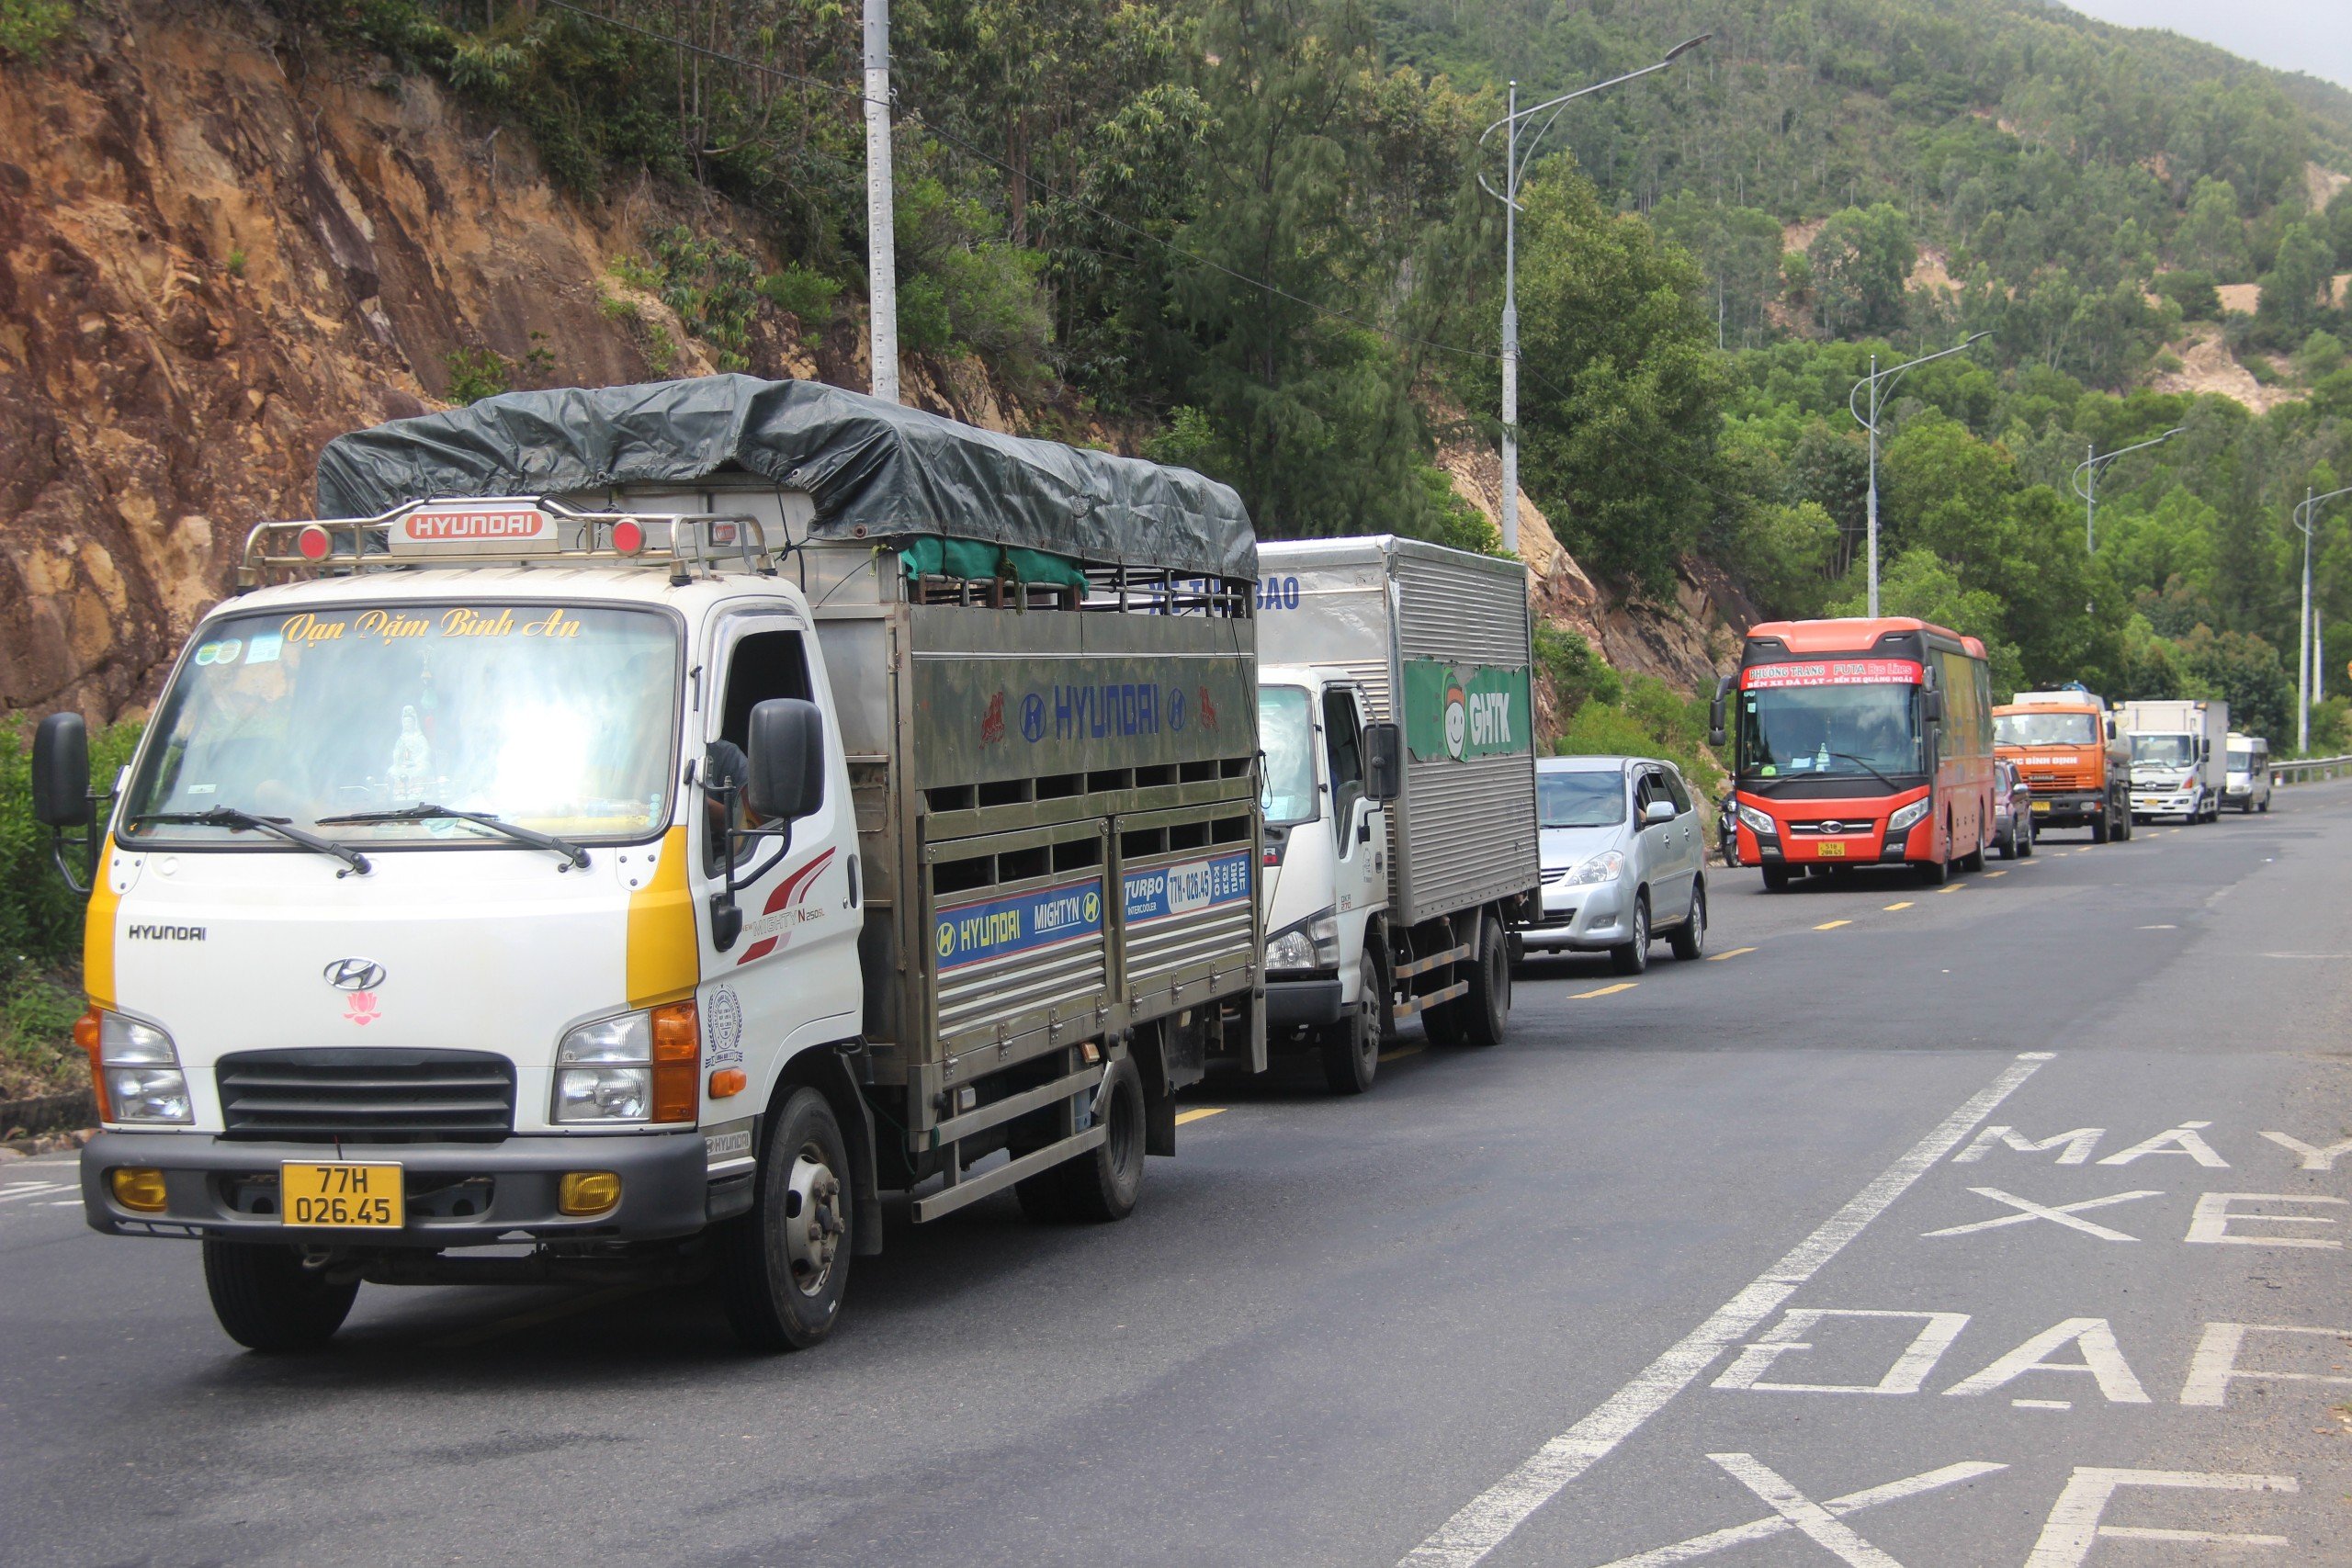 4 xe tải nát bét sau cú tông liên hoàn trên đoạn đường đèo giáp ranh Bình Định và Phú Yên- Ảnh 6.